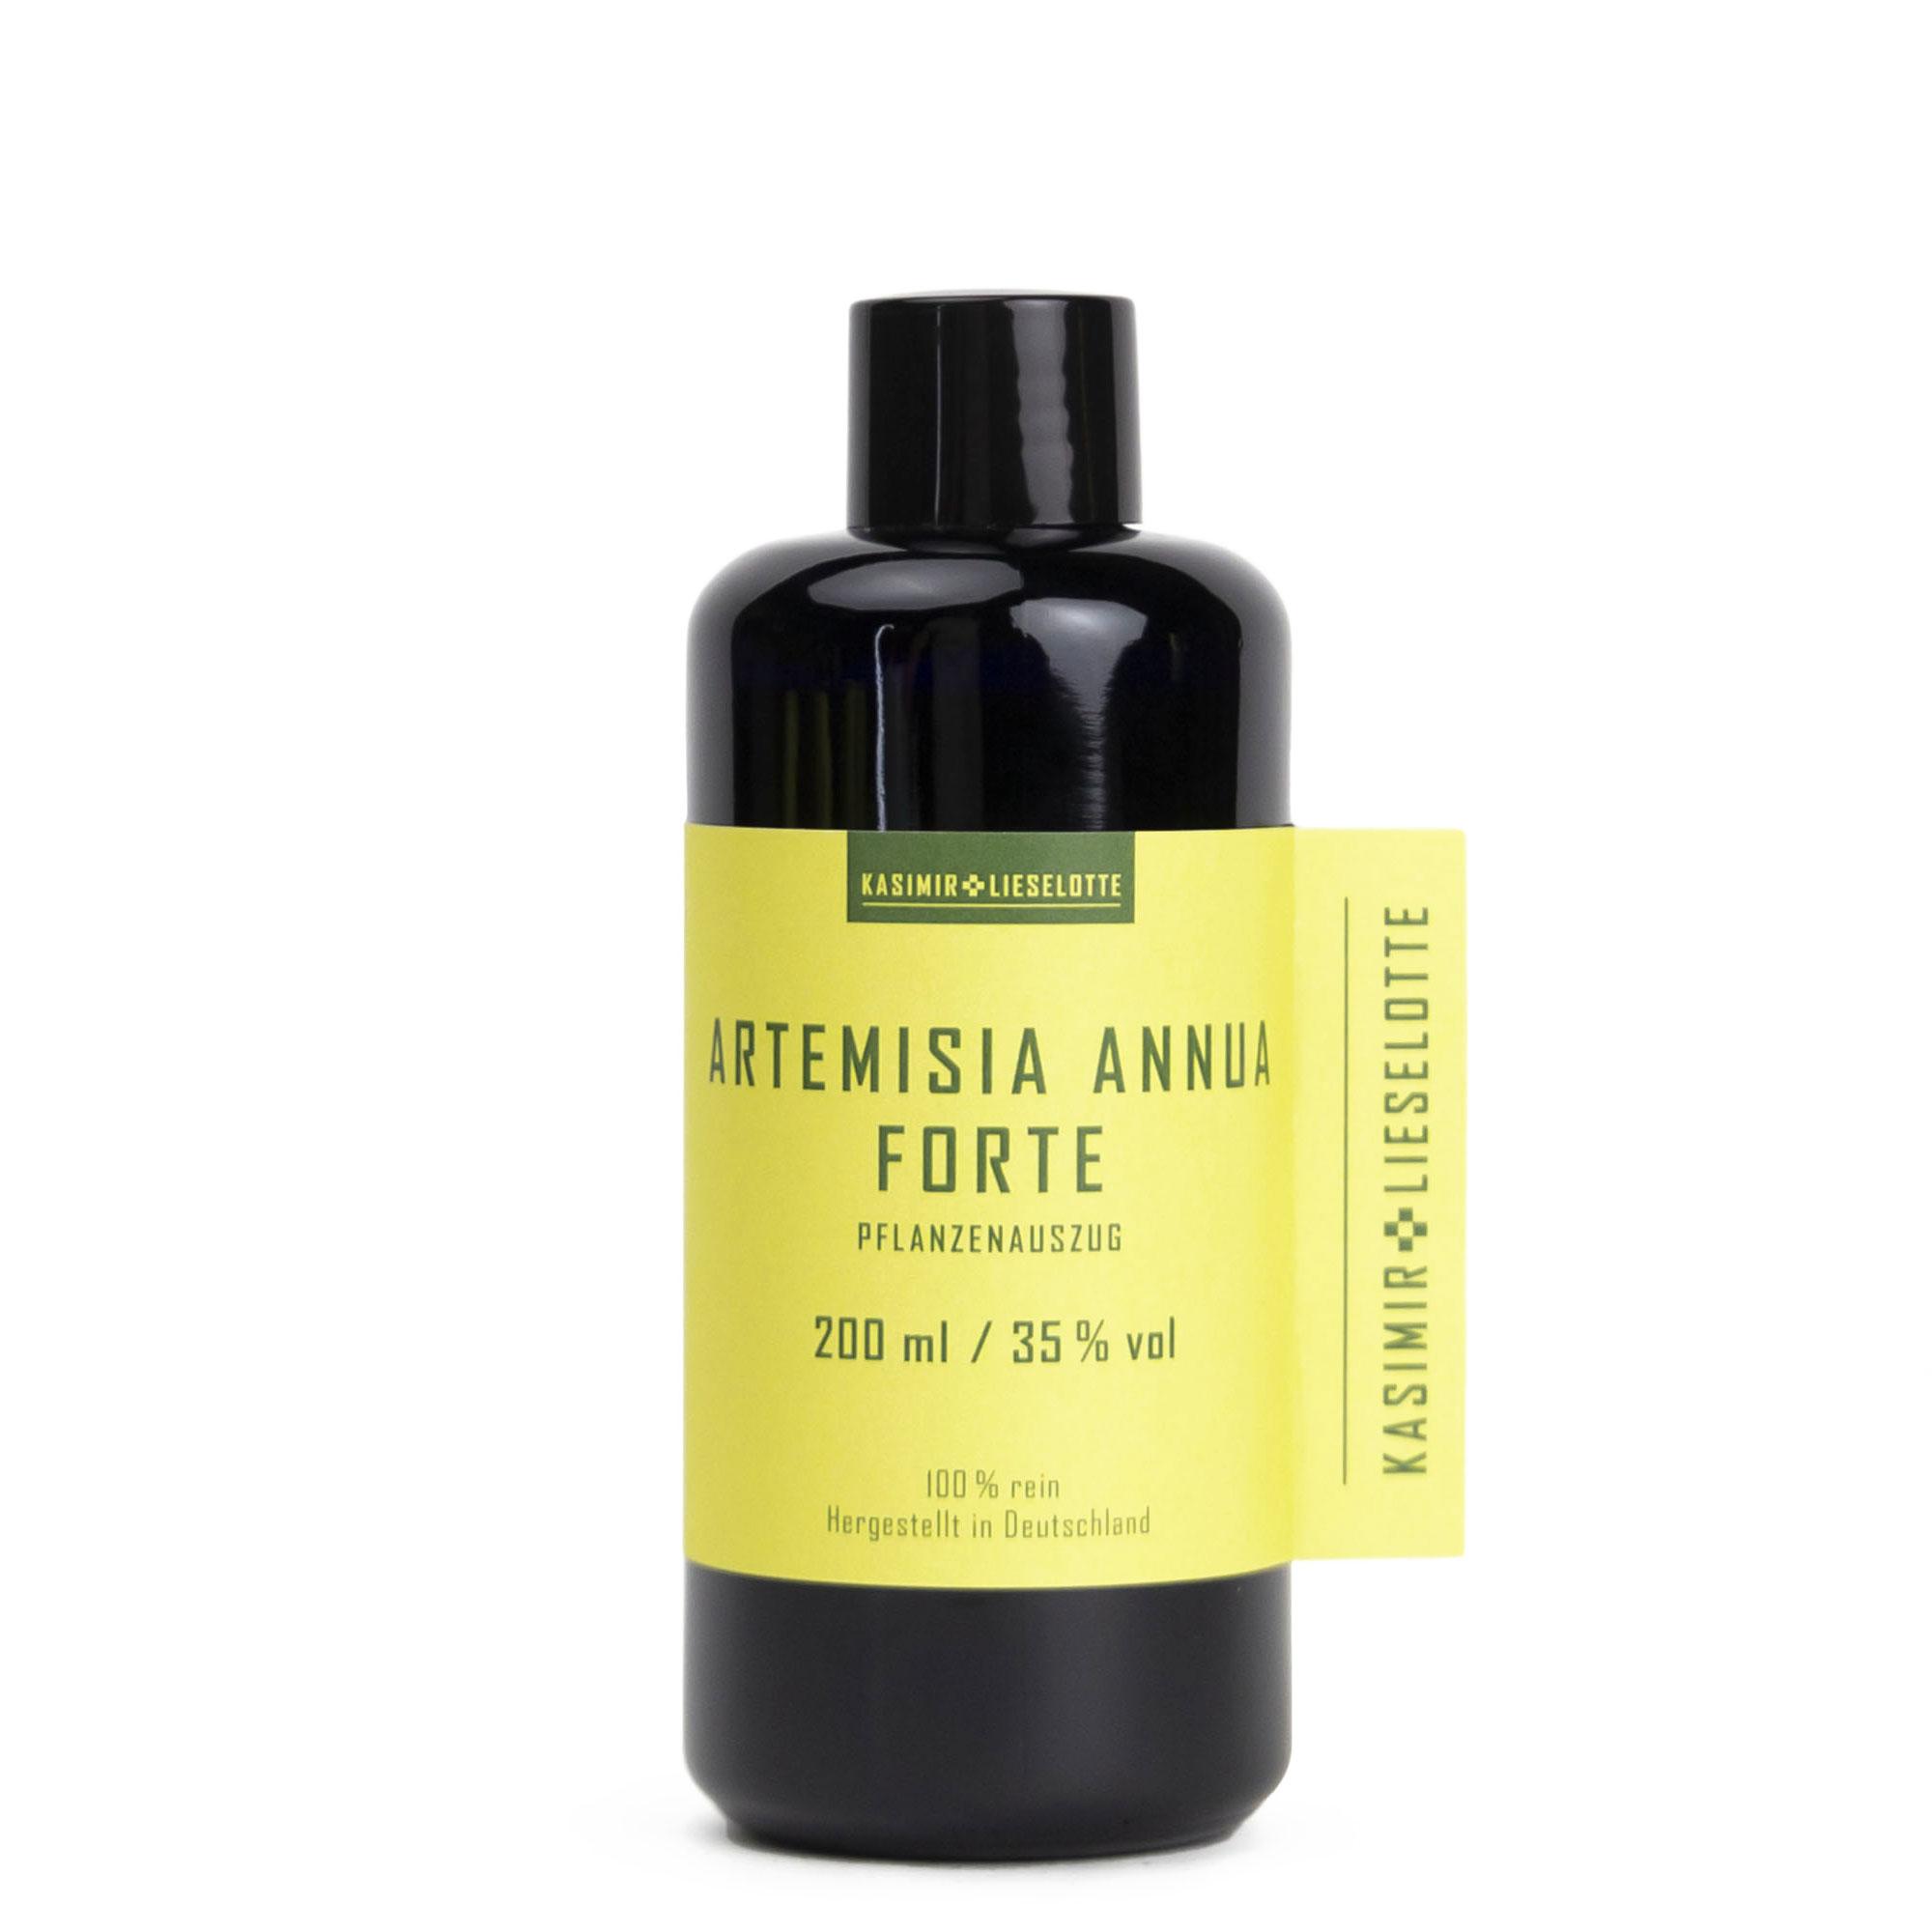 Artemisia annua Forte Pflanzenauszug - Auswahl: 200 ml